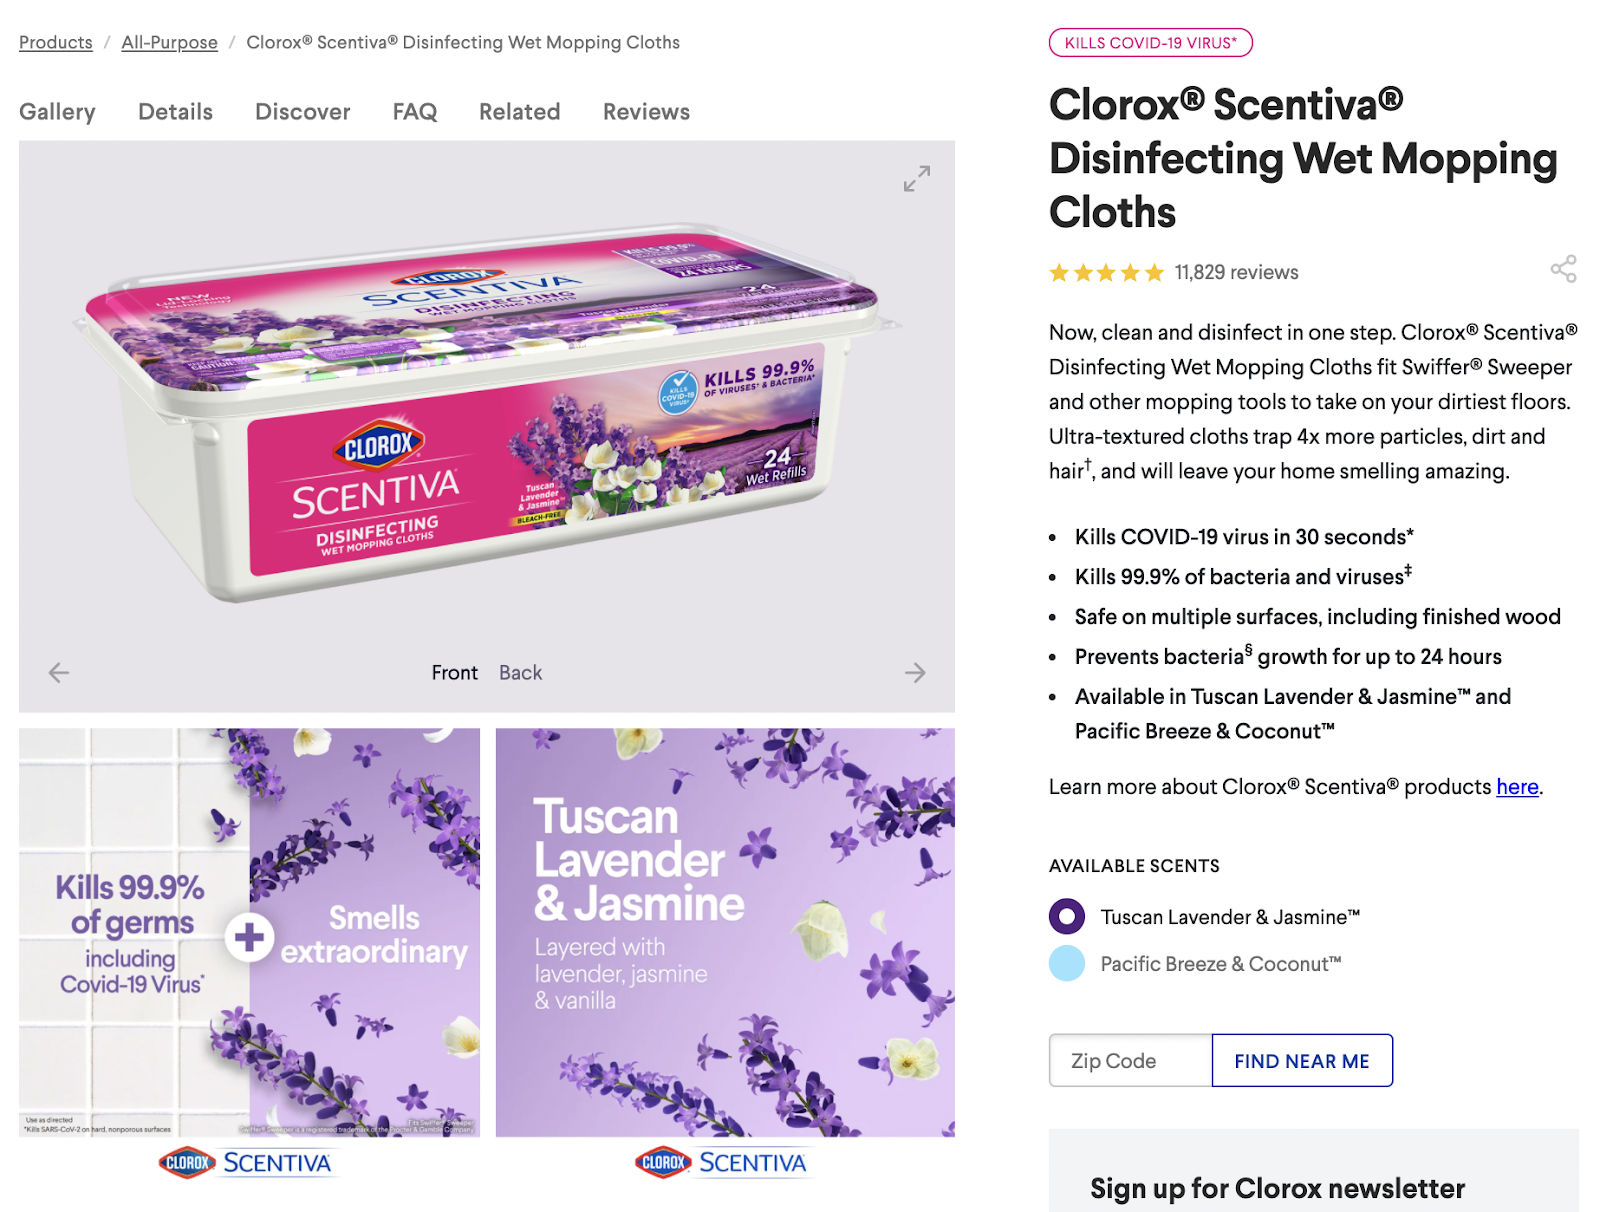 Clorox Scentiva Product Description Page 